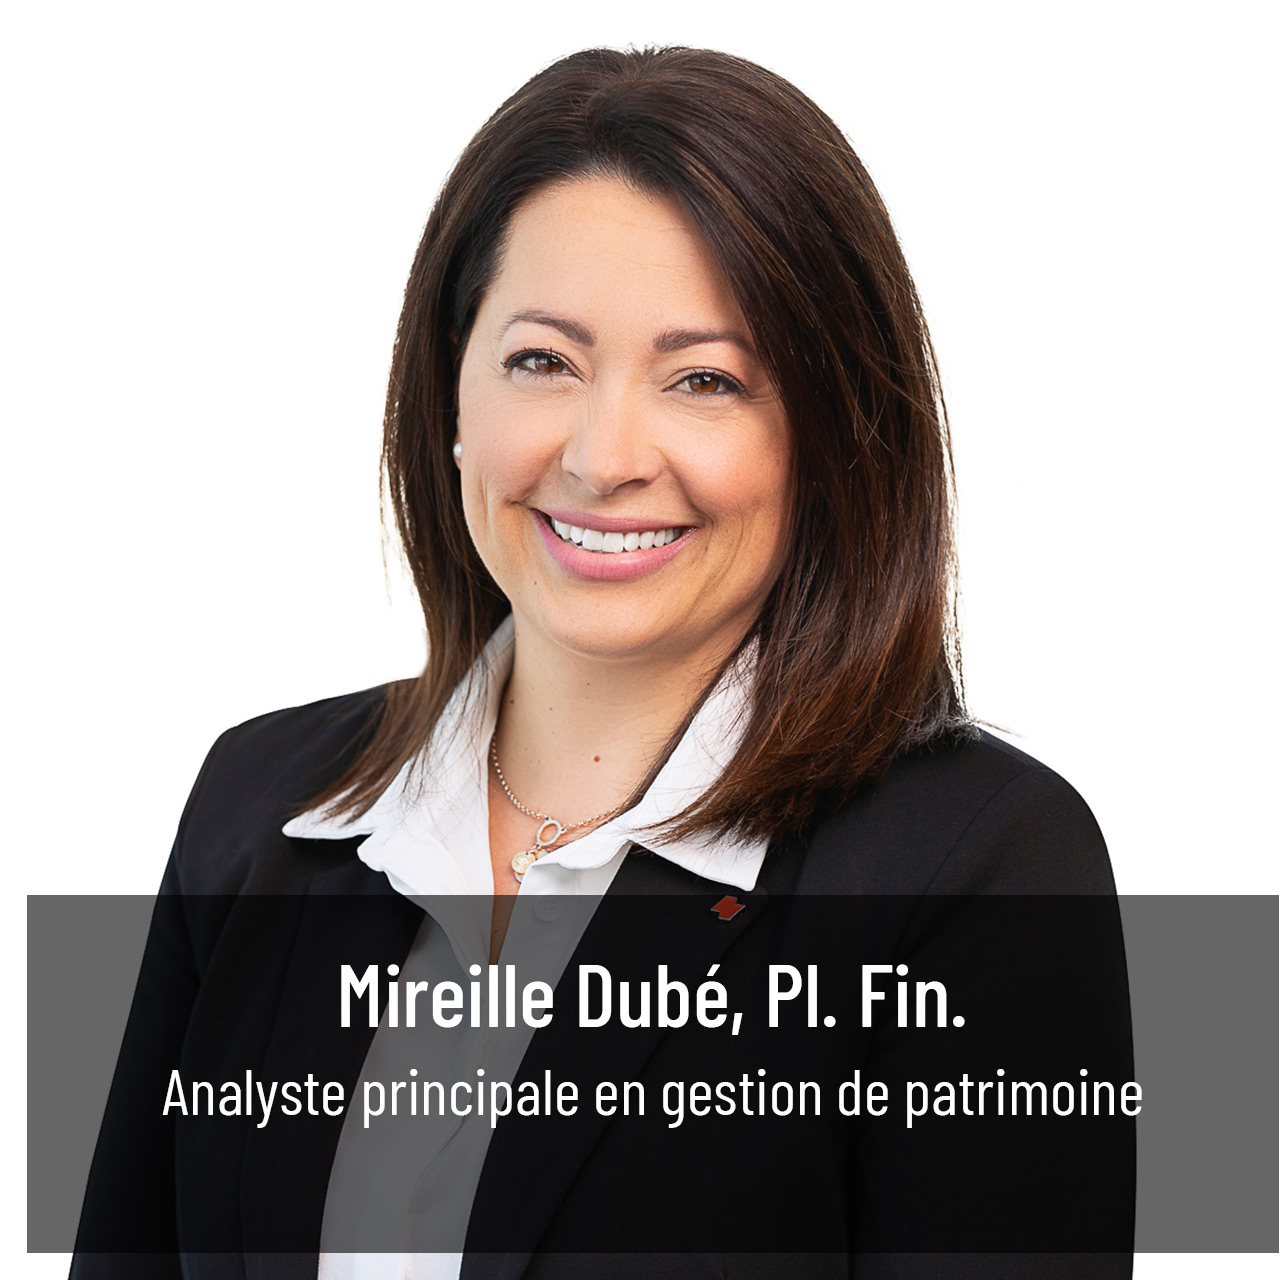 Mireille Dubé